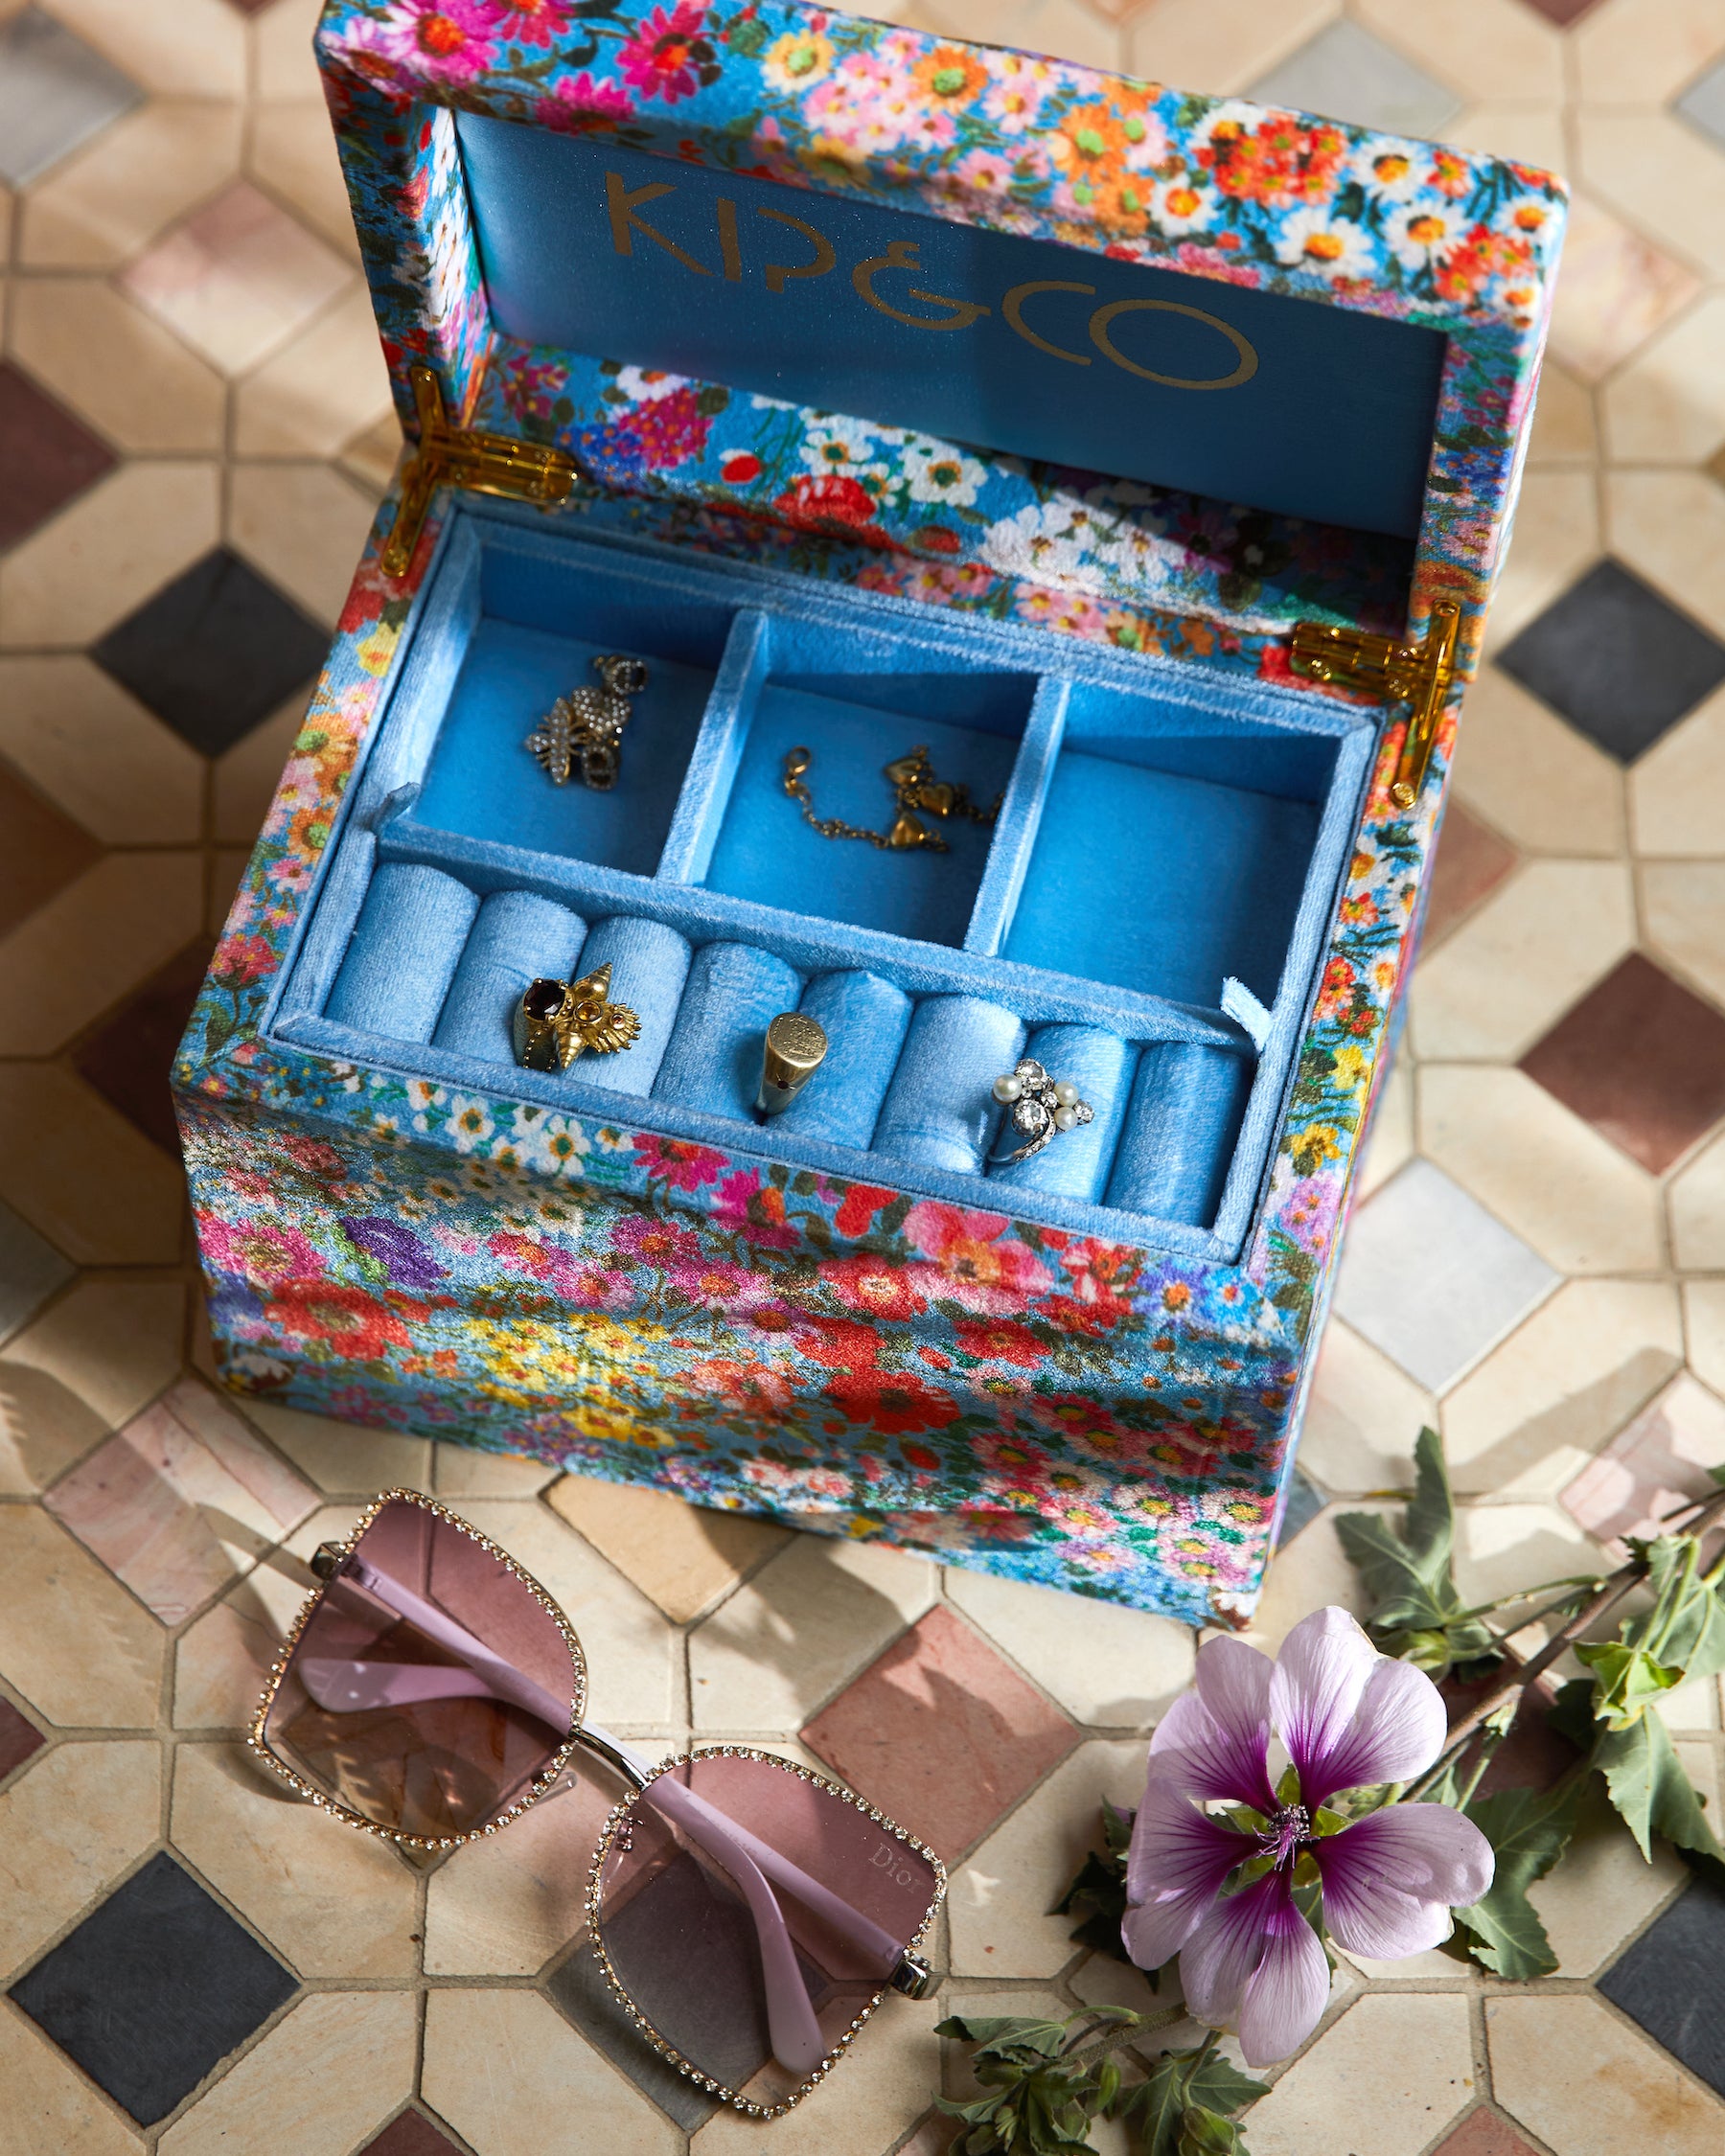 Forever Floral Large Velvet Jewellery Box – Kip&Co USA